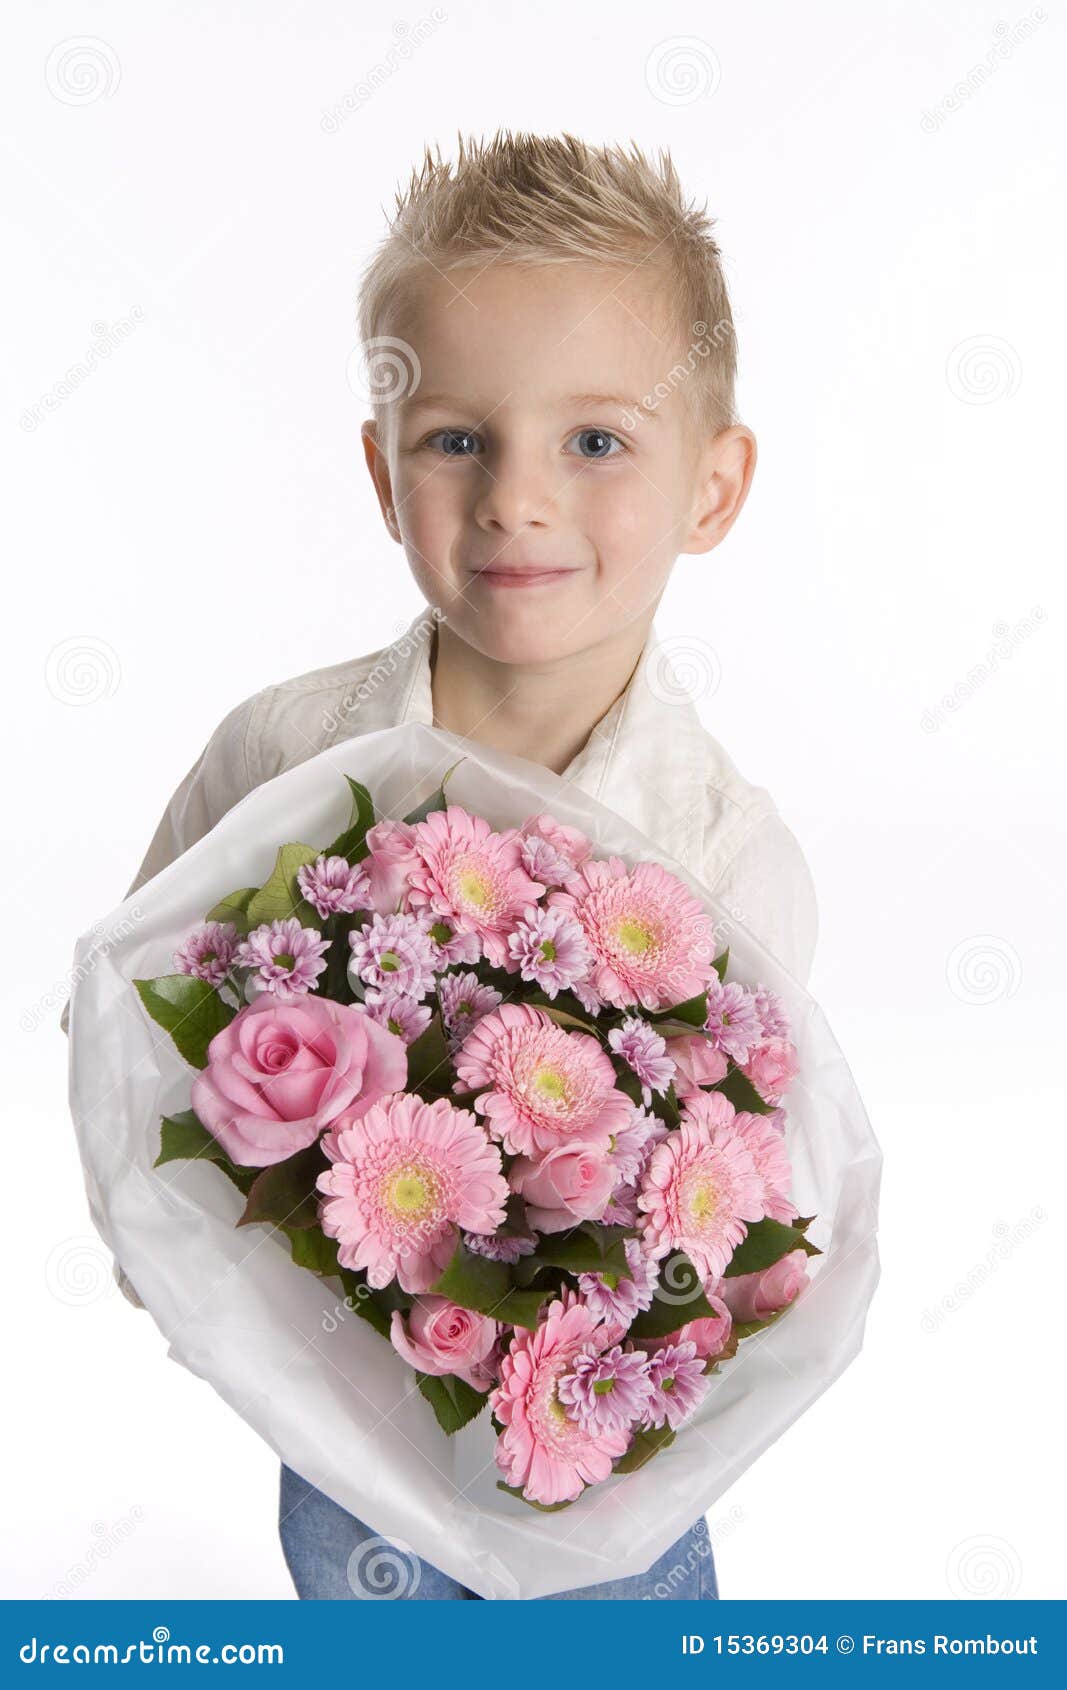 little boy flowers